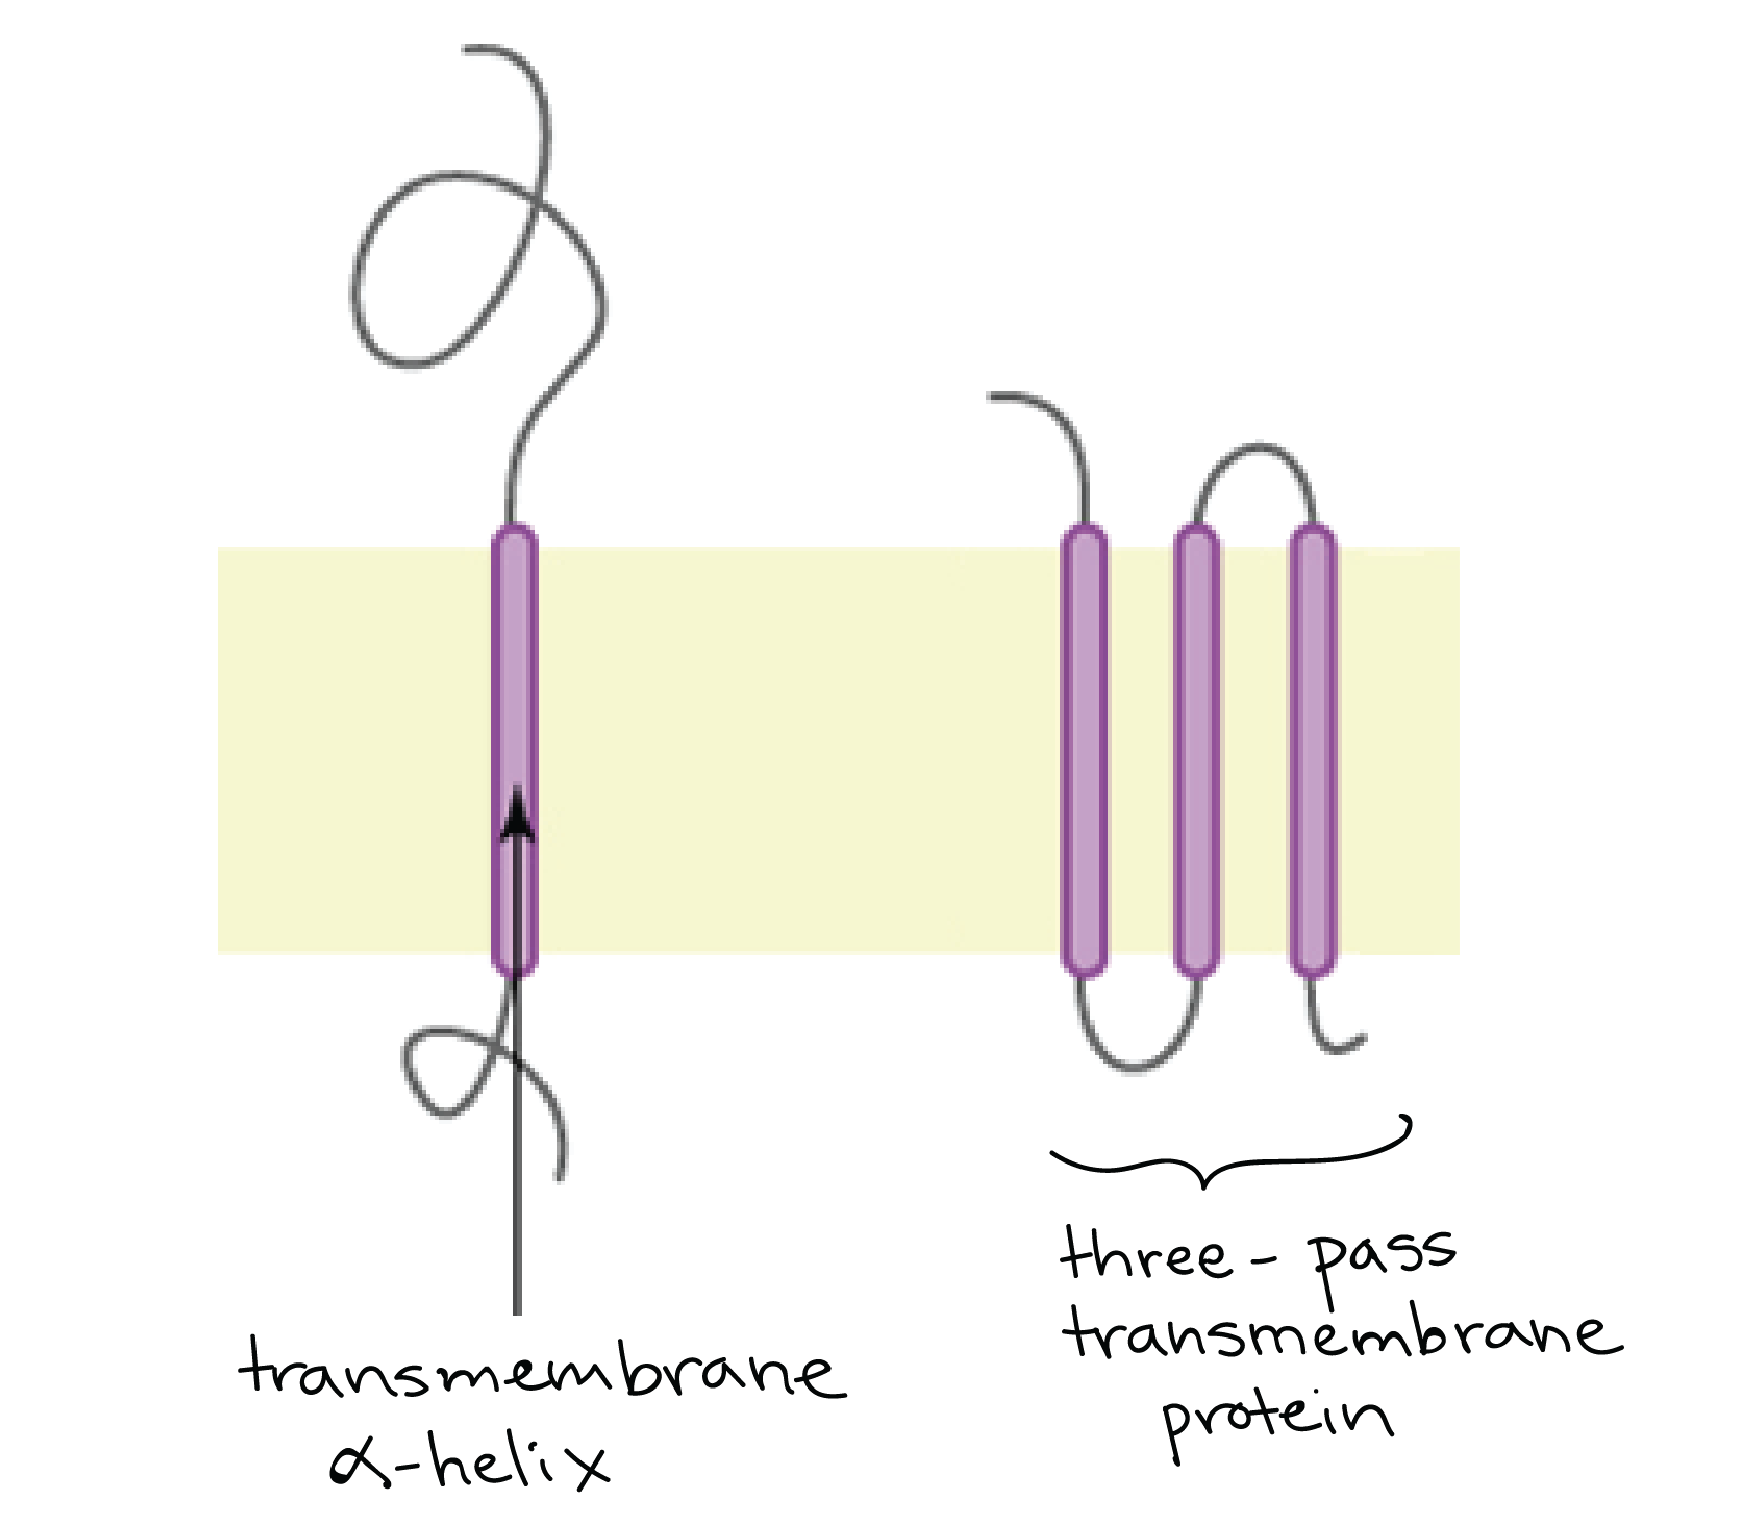 Gambar protein transmembran satu jalur dengan heliks alfa rentang membran tunggal dan protein transmembran tiga jalur dengan tiga heliks alfa rentang membran.